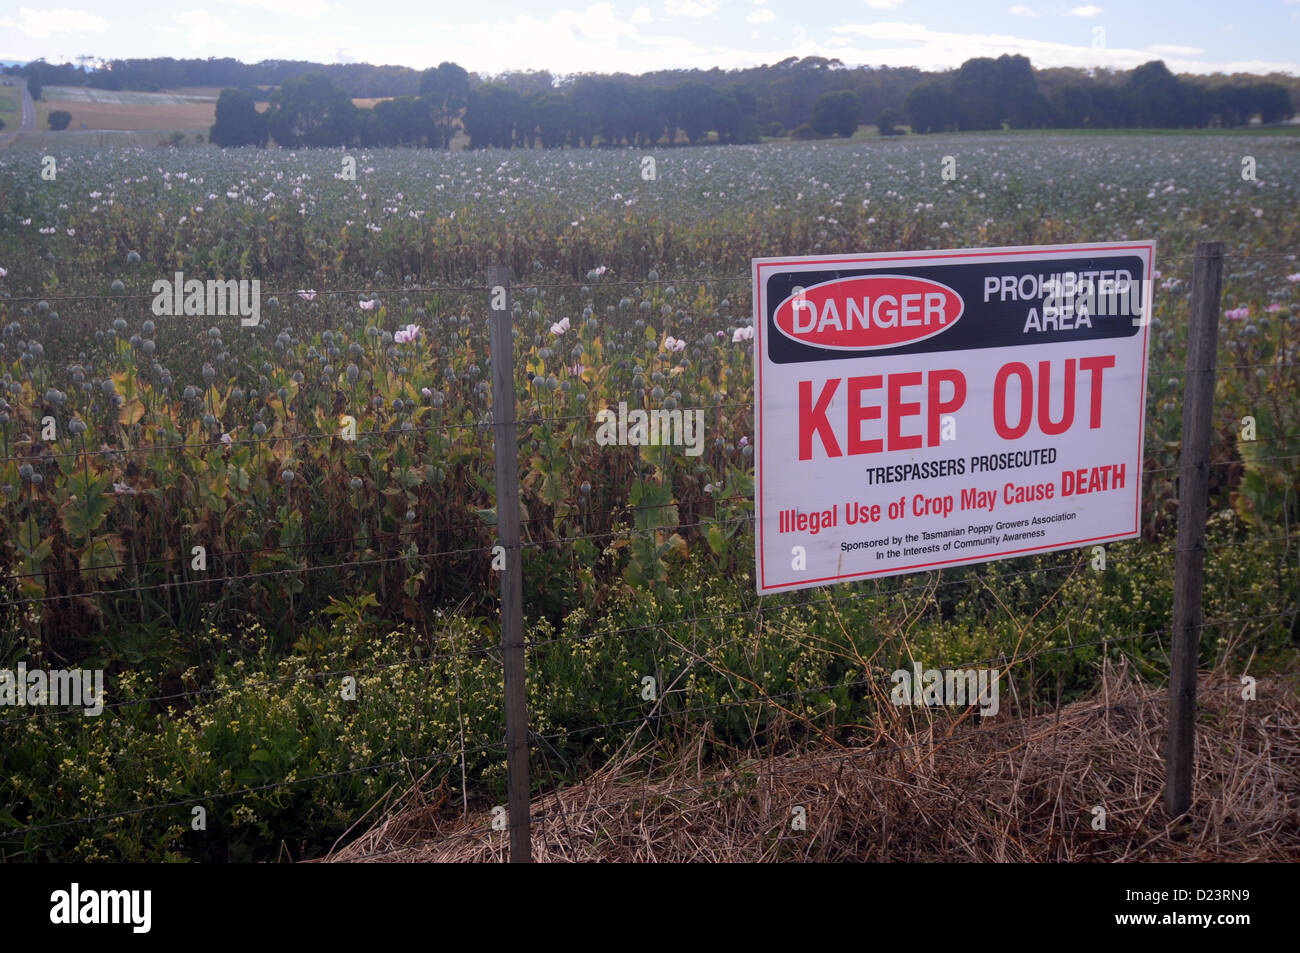 Avertissement signe que l'usage illégal de récolte peut causer la mort, des champs de pavot du nord de la Tasmanie, Australie Banque D'Images